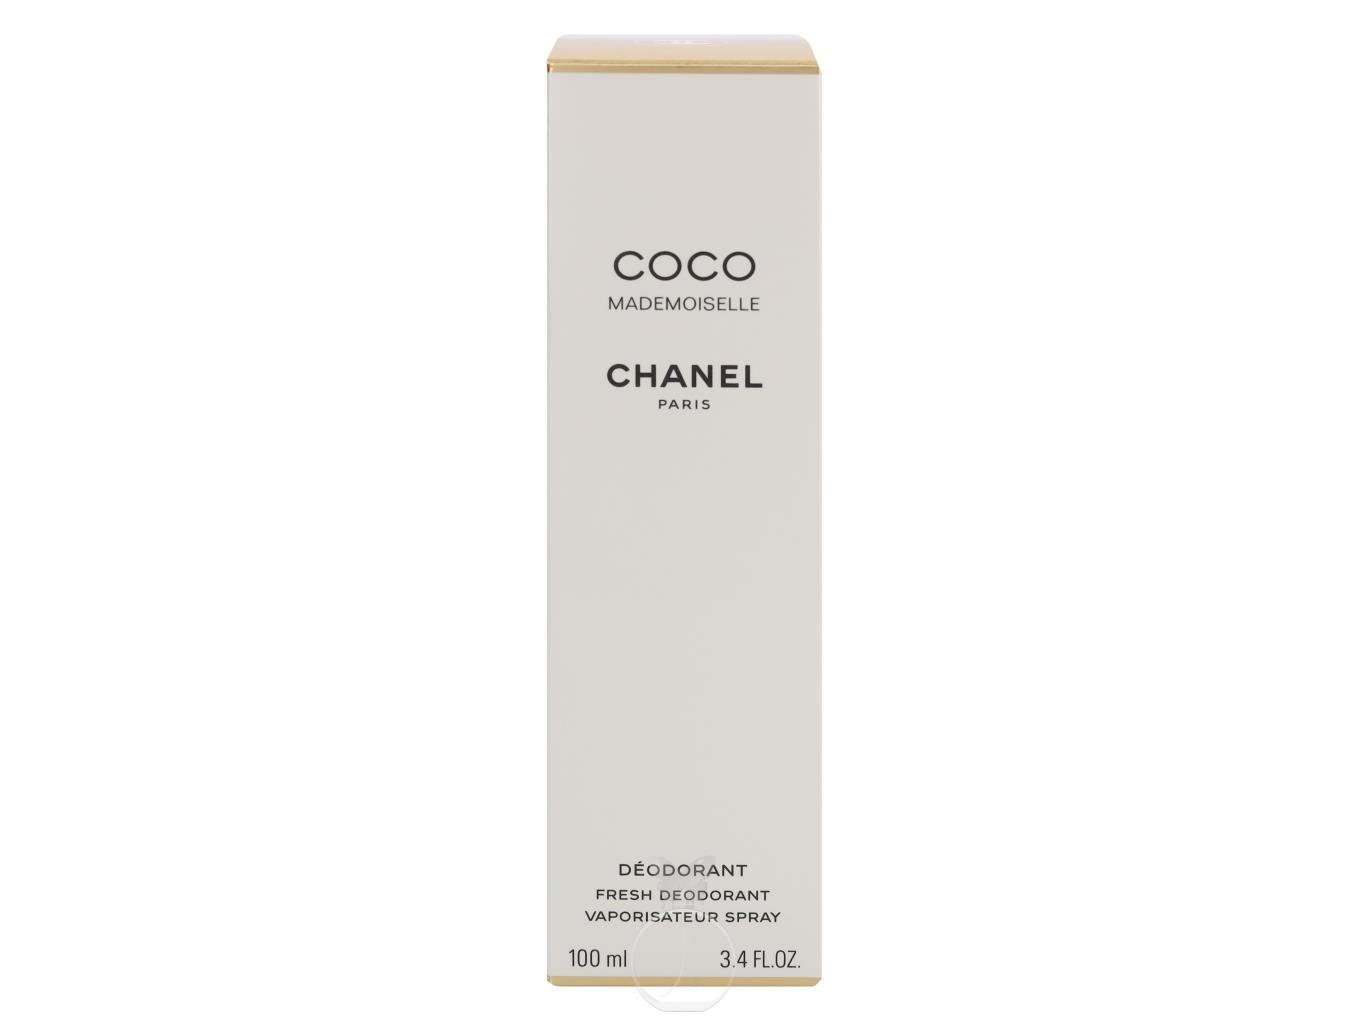 Körperpflegeduft Mademoiselle Deodorant Chanel 100 ml CHANEL Coco